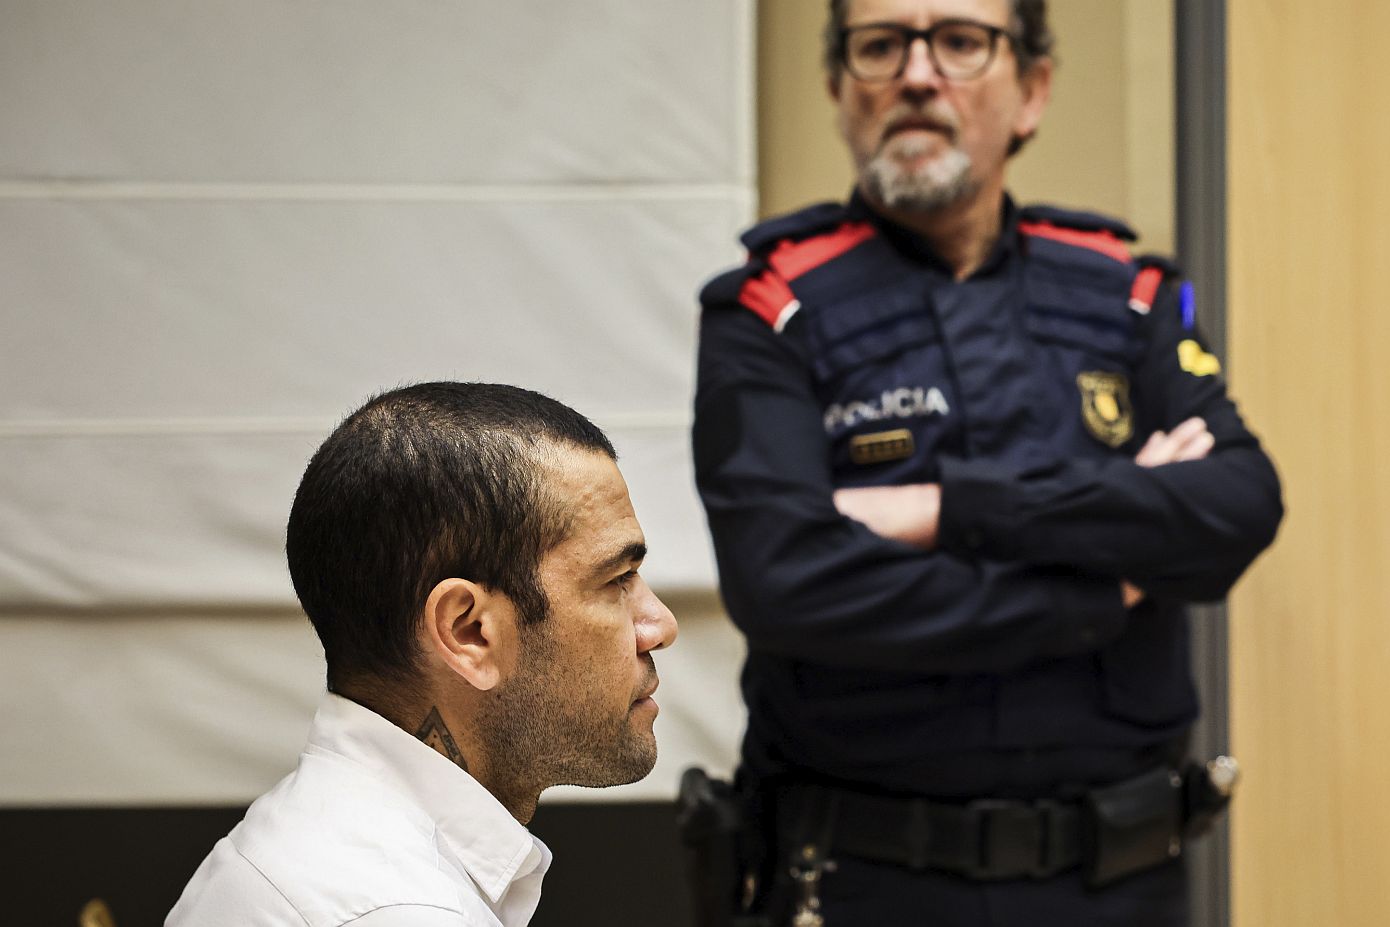 Προσωρινά ελεύθερος ο Ντάνι Άλβες μετά την κατάθεση εγγύησης ύψους ενός εκατ. ευρώ